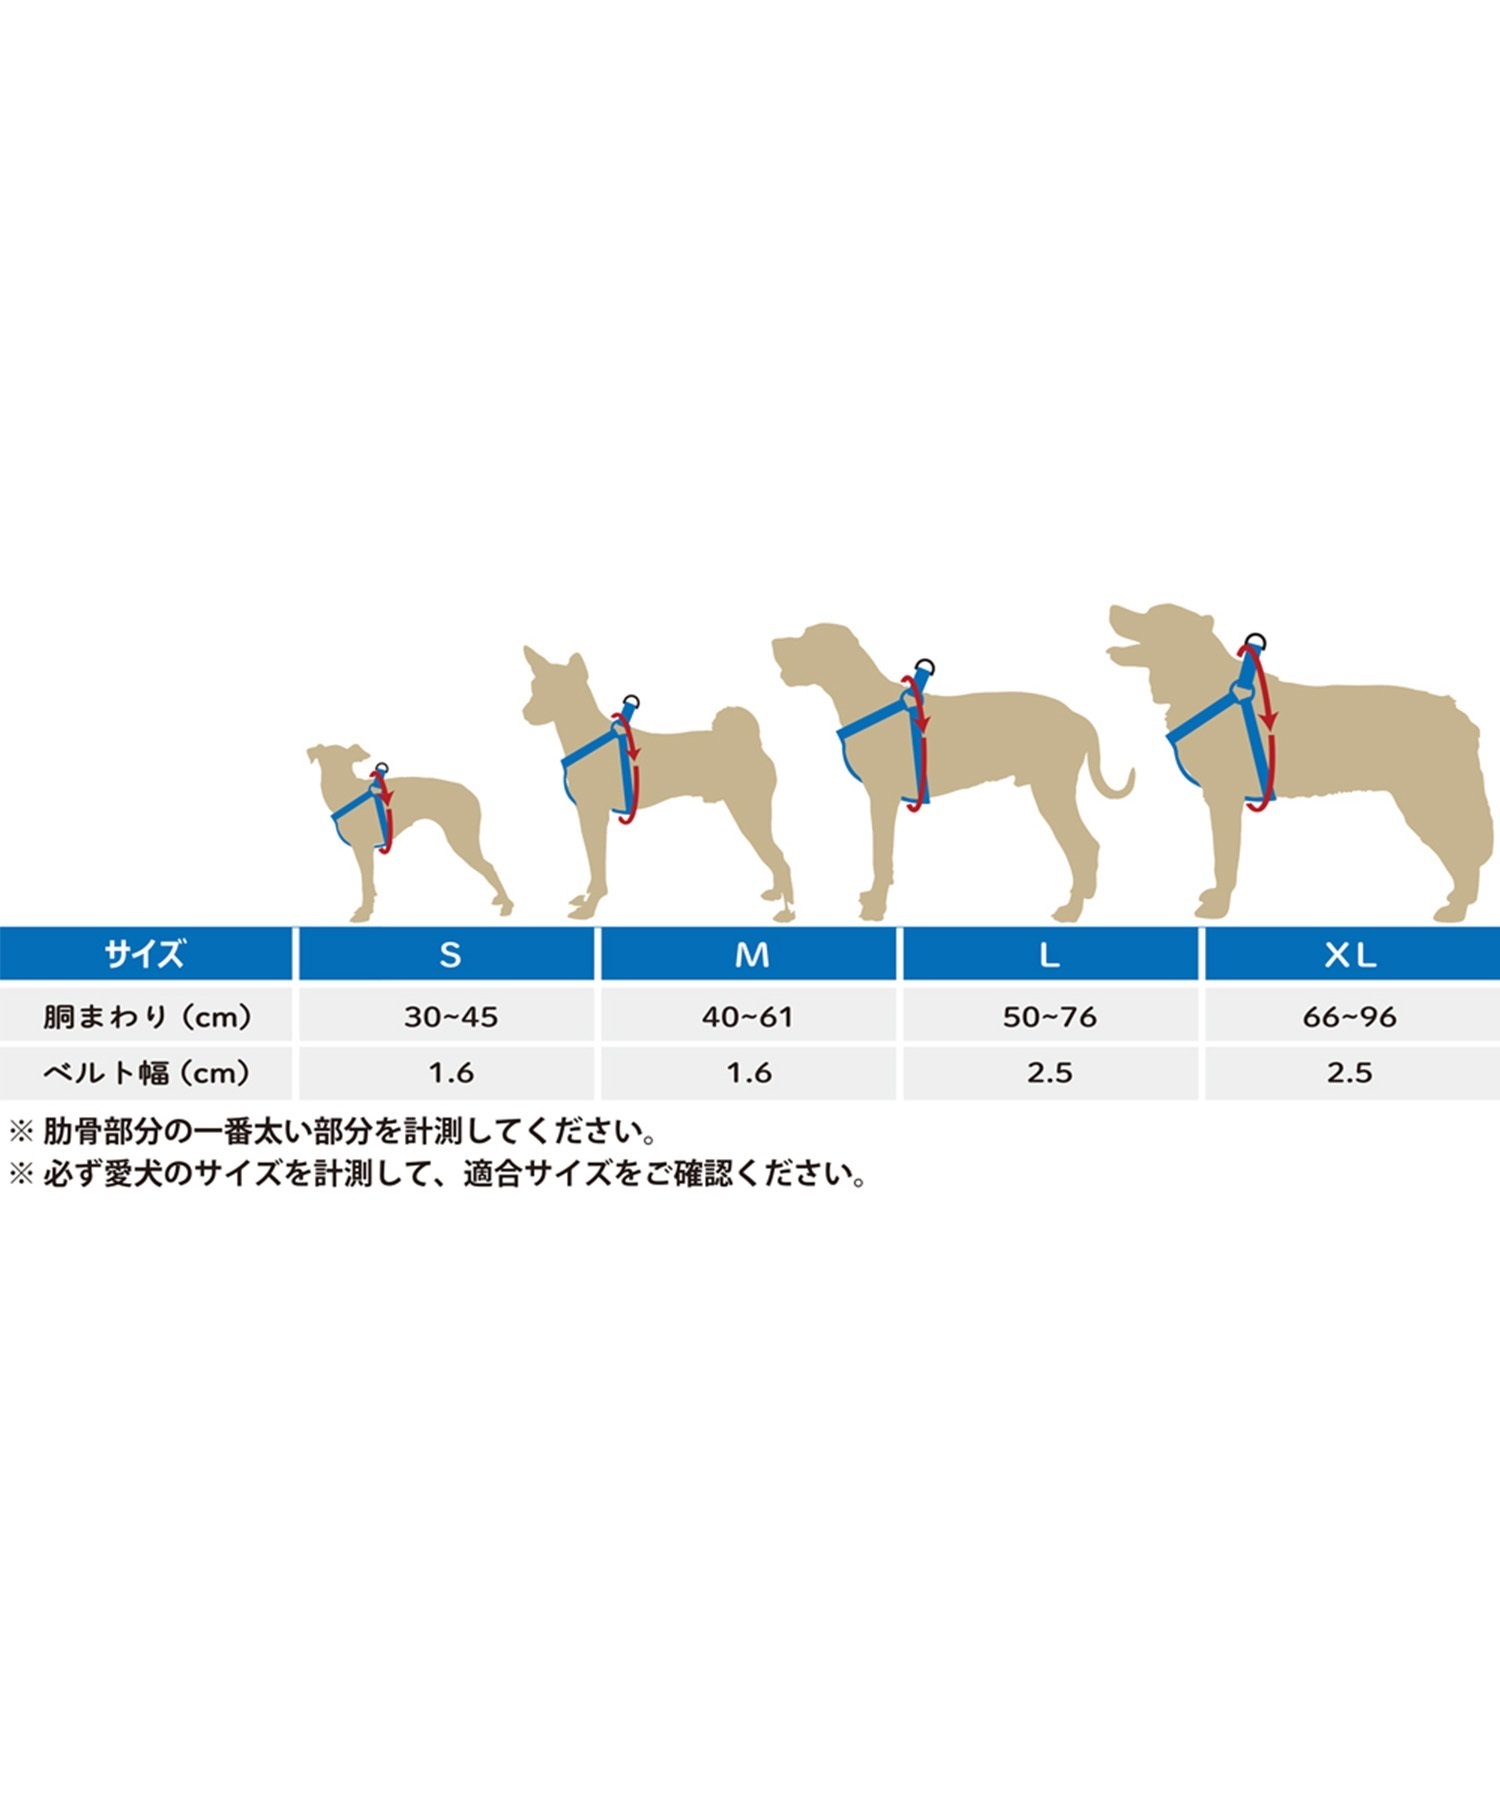 WOLFGANG ウルフギャング 犬用 ハーネス MarbleWave Harness Sサイズ 超小型犬用 小型犬用 胴輪 マーブルウェイブ ブルー系 WH-001-102(PU-S)